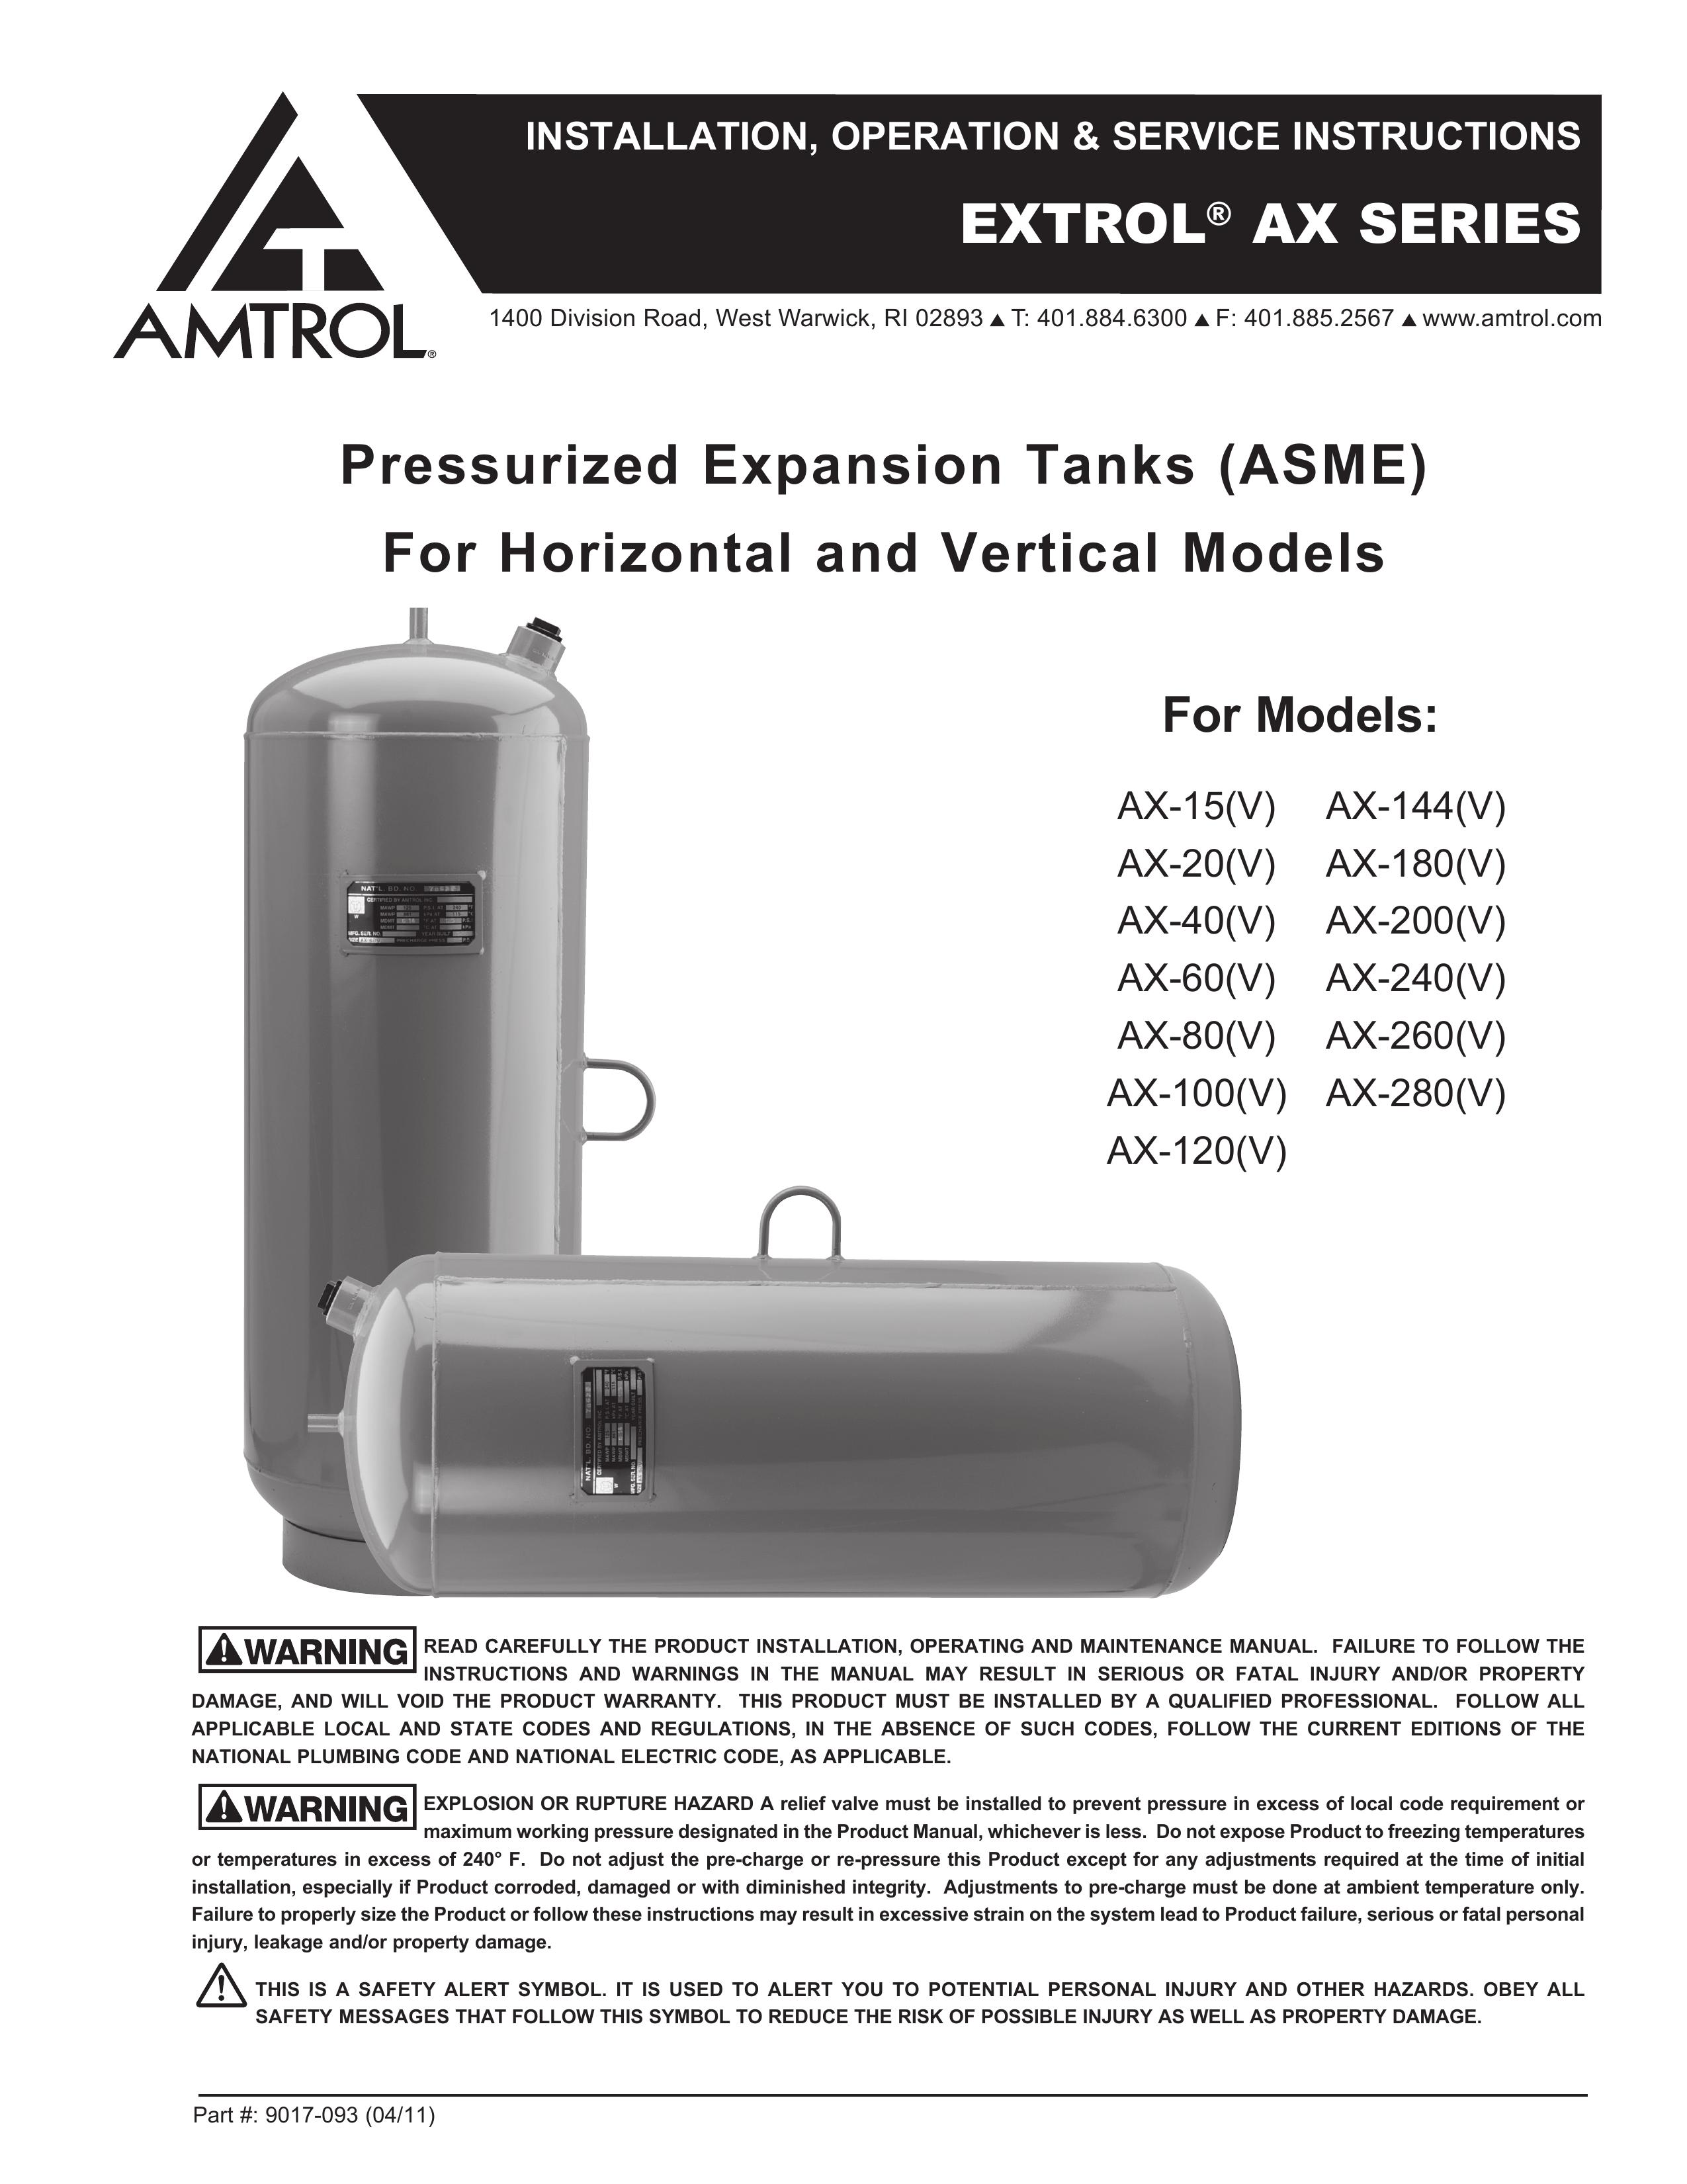 Amtrol AX-200(V) Oxygen Equipment User Manual